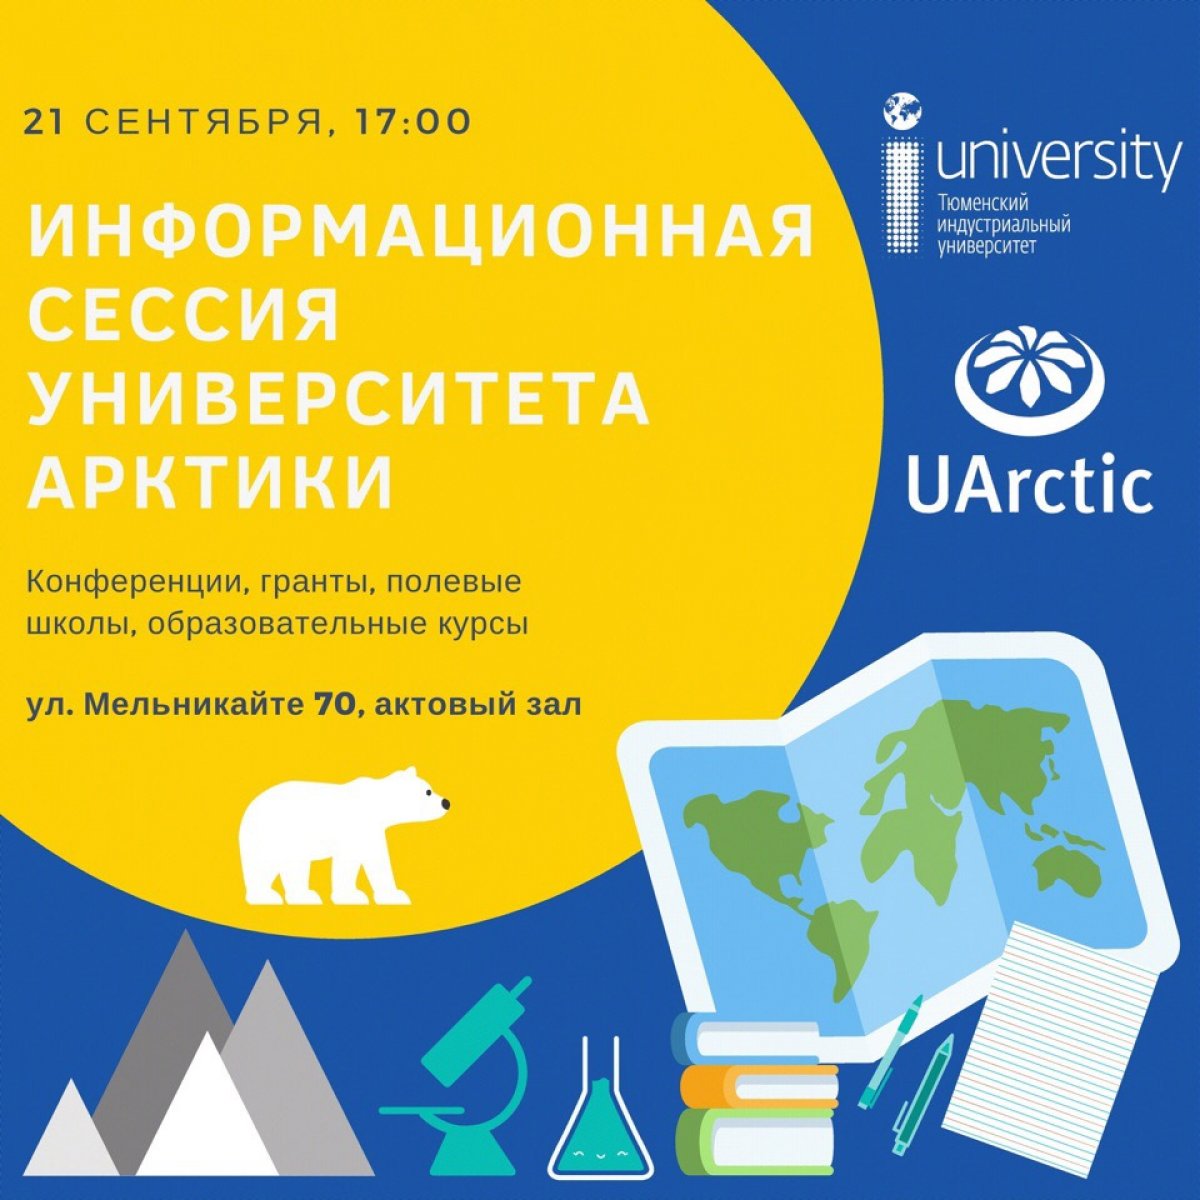 Приглашаем Вас в на презентацию Университета Арктики! Это уникальный шанс узнать о возможностях, которые предоставляет сеть UArctic для студентов, аспирантов и молодых ученых!